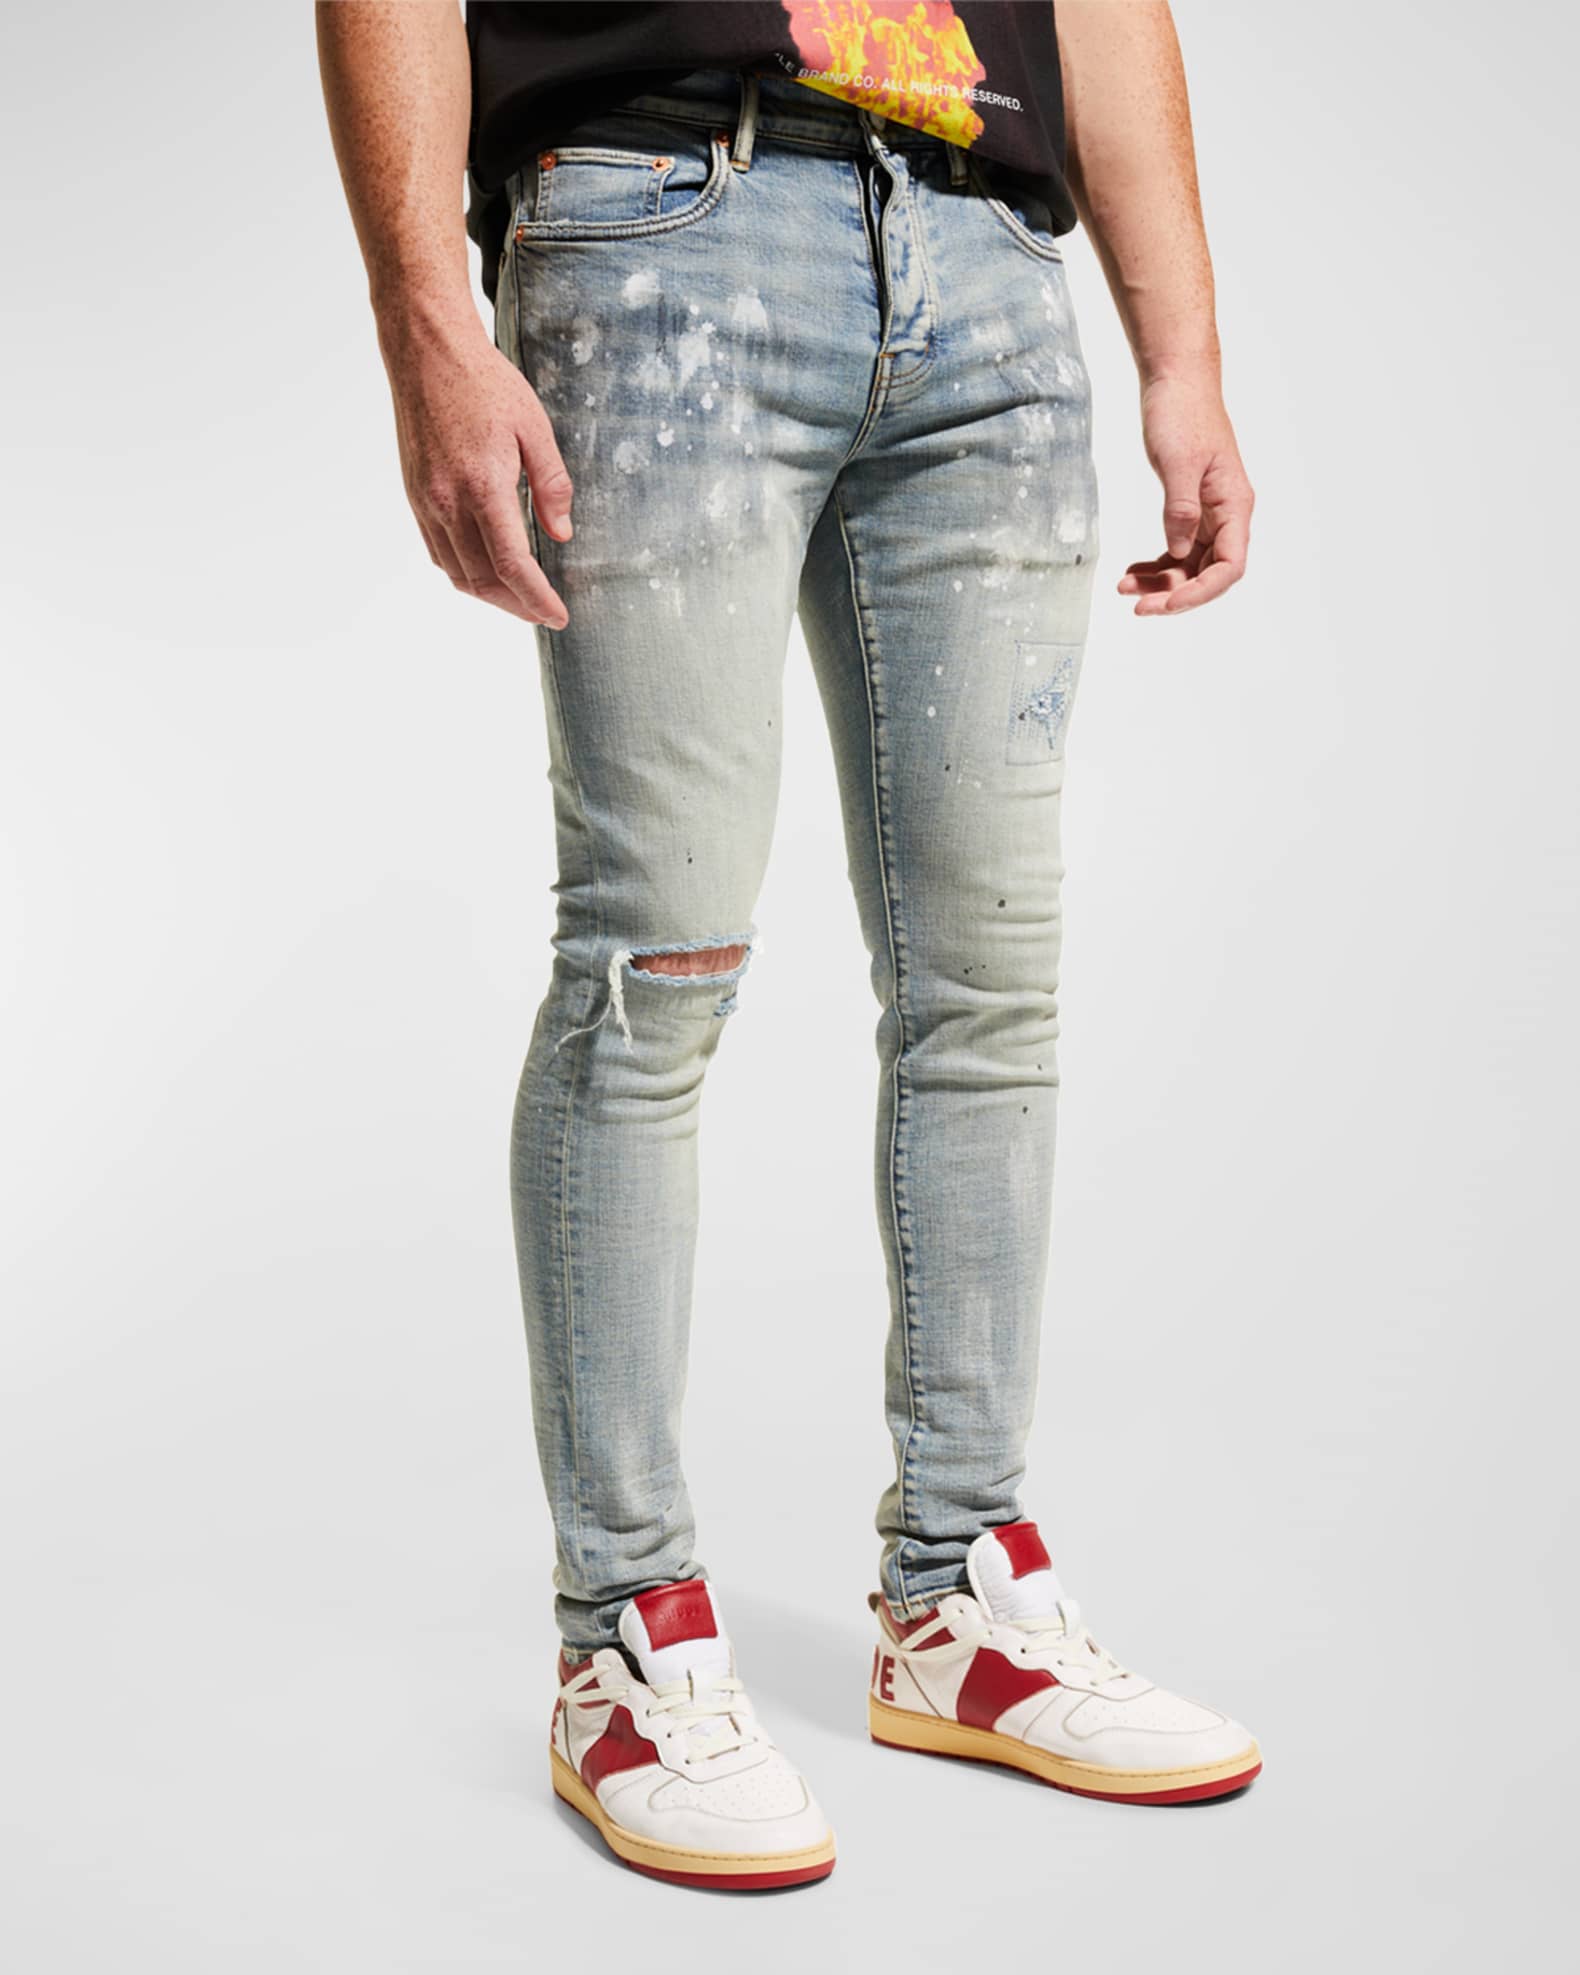 Afvigelse Adept Ensomhed PURPLE Men's Slim-Fit Distressed Jeans | Neiman Marcus